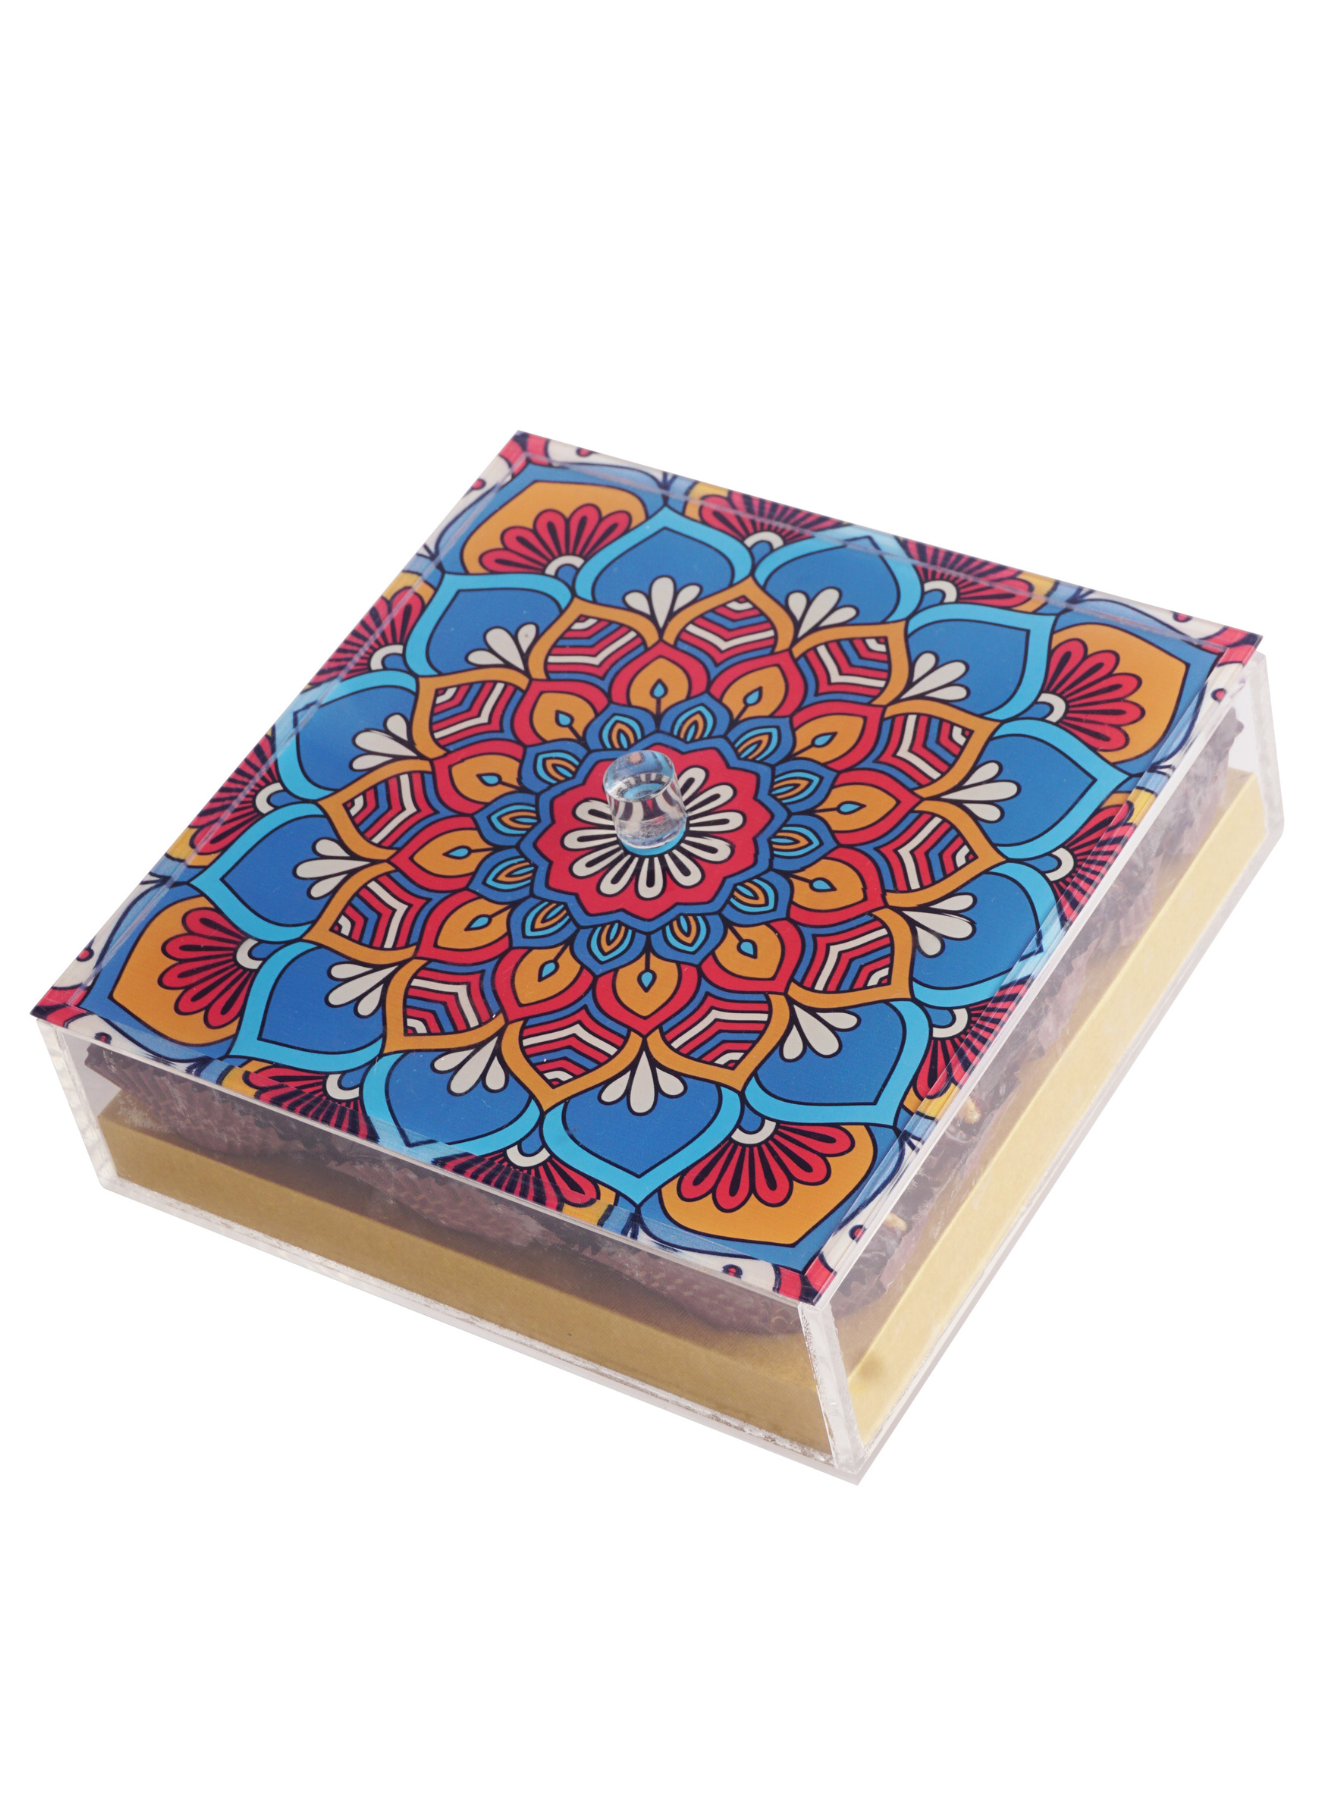 Safawi Dates with Mandala Acrylic Box